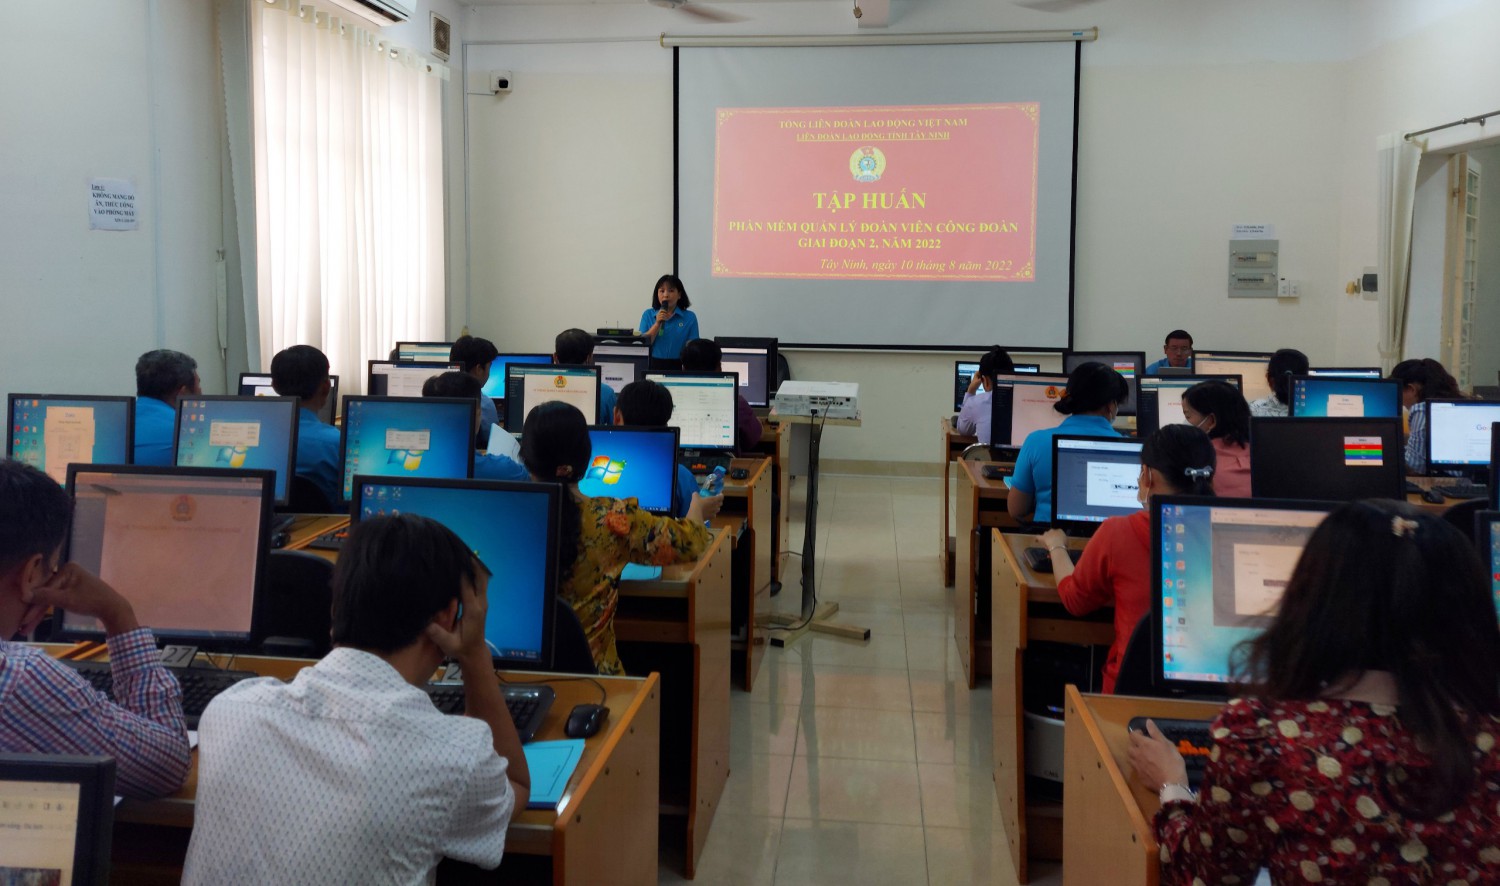 Tây Ninh tập huấn Phần mềm “Quản lý đoàn viên công đoàn”, giai đoạn II